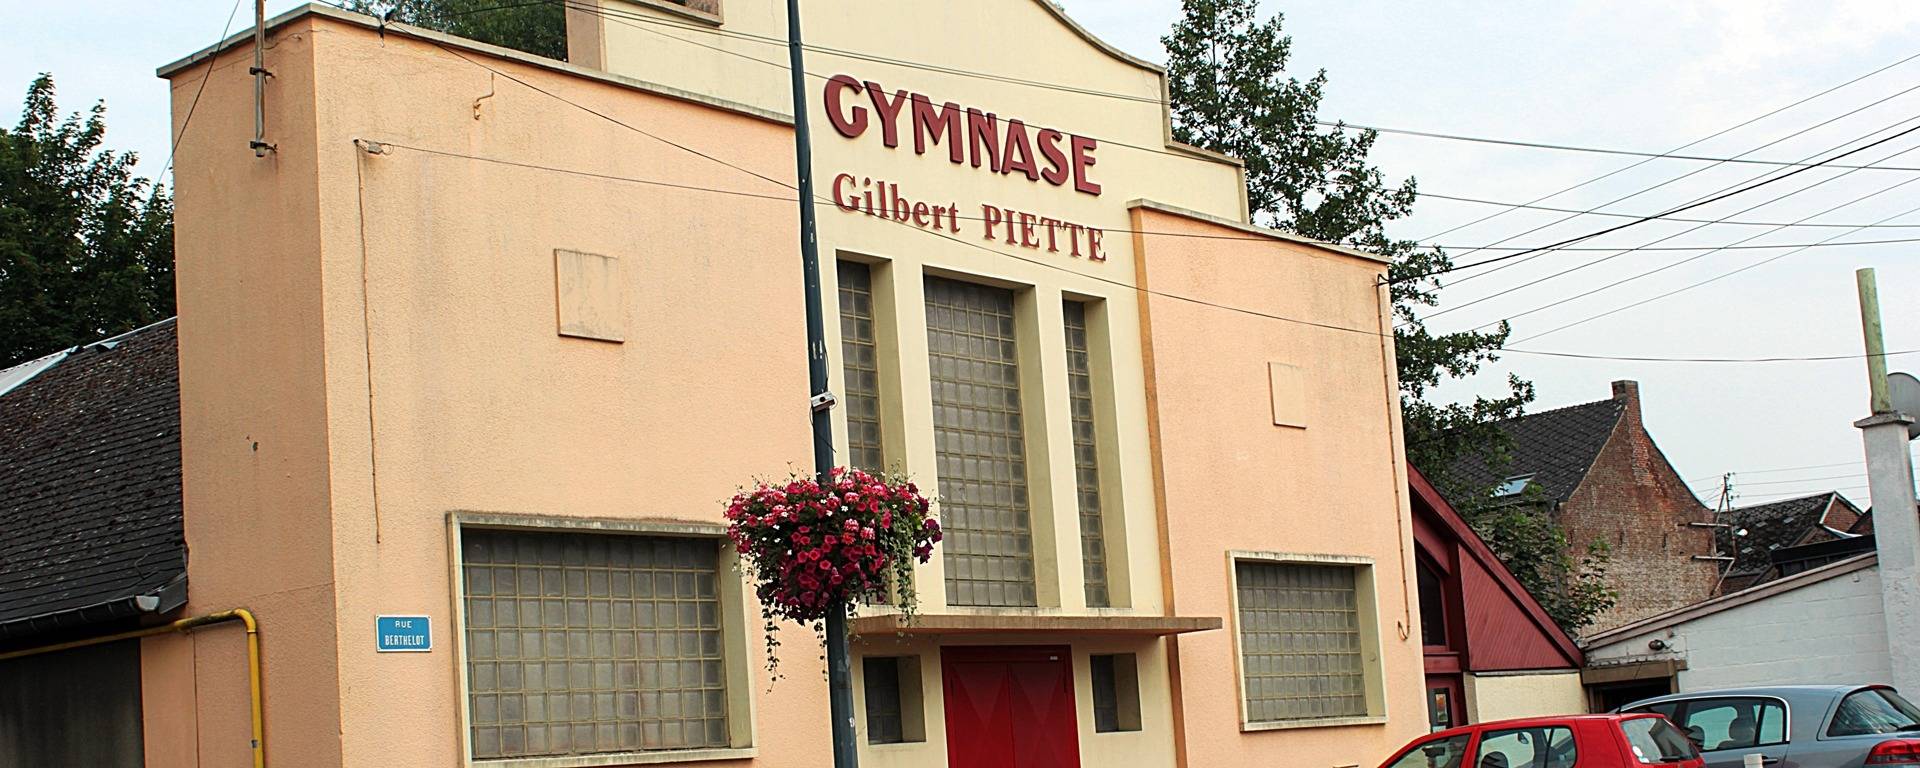 Gymnase Gilbert Piette